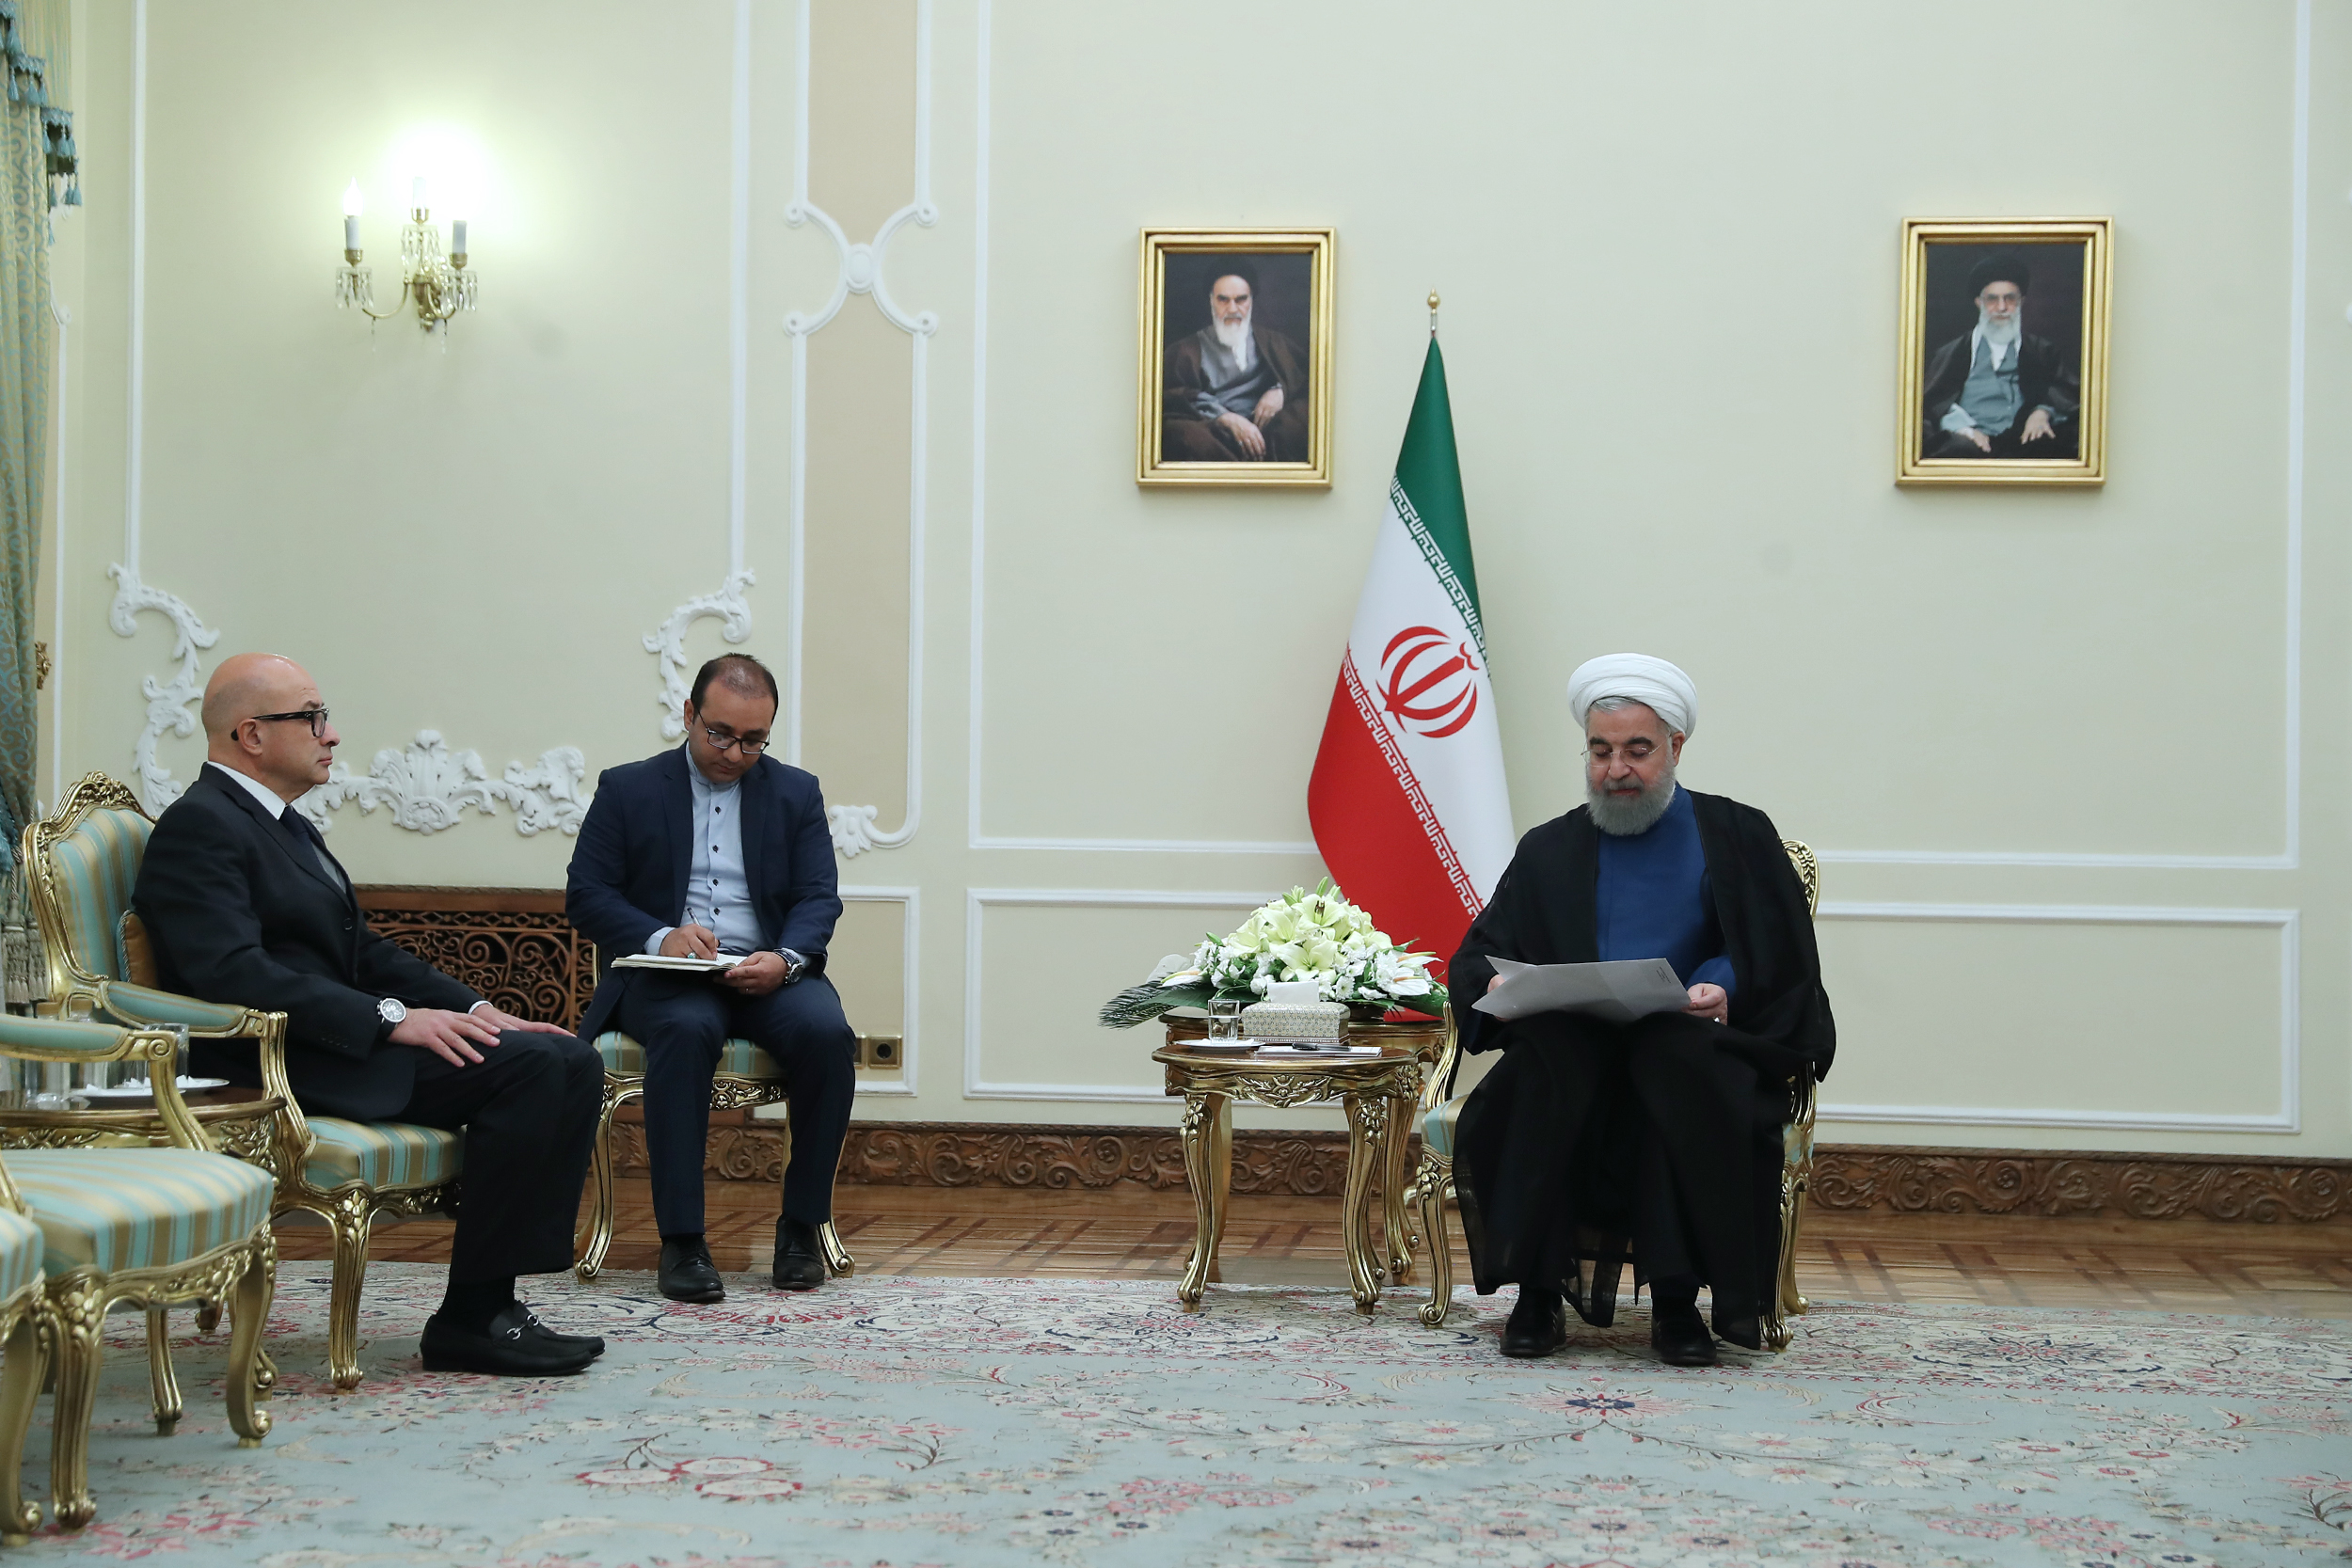 روحانی: ضربه به برجام، ضربه به امنیت و ثبات منطقه و جهان است/ شکستن میز مذاکرات هنر نیست